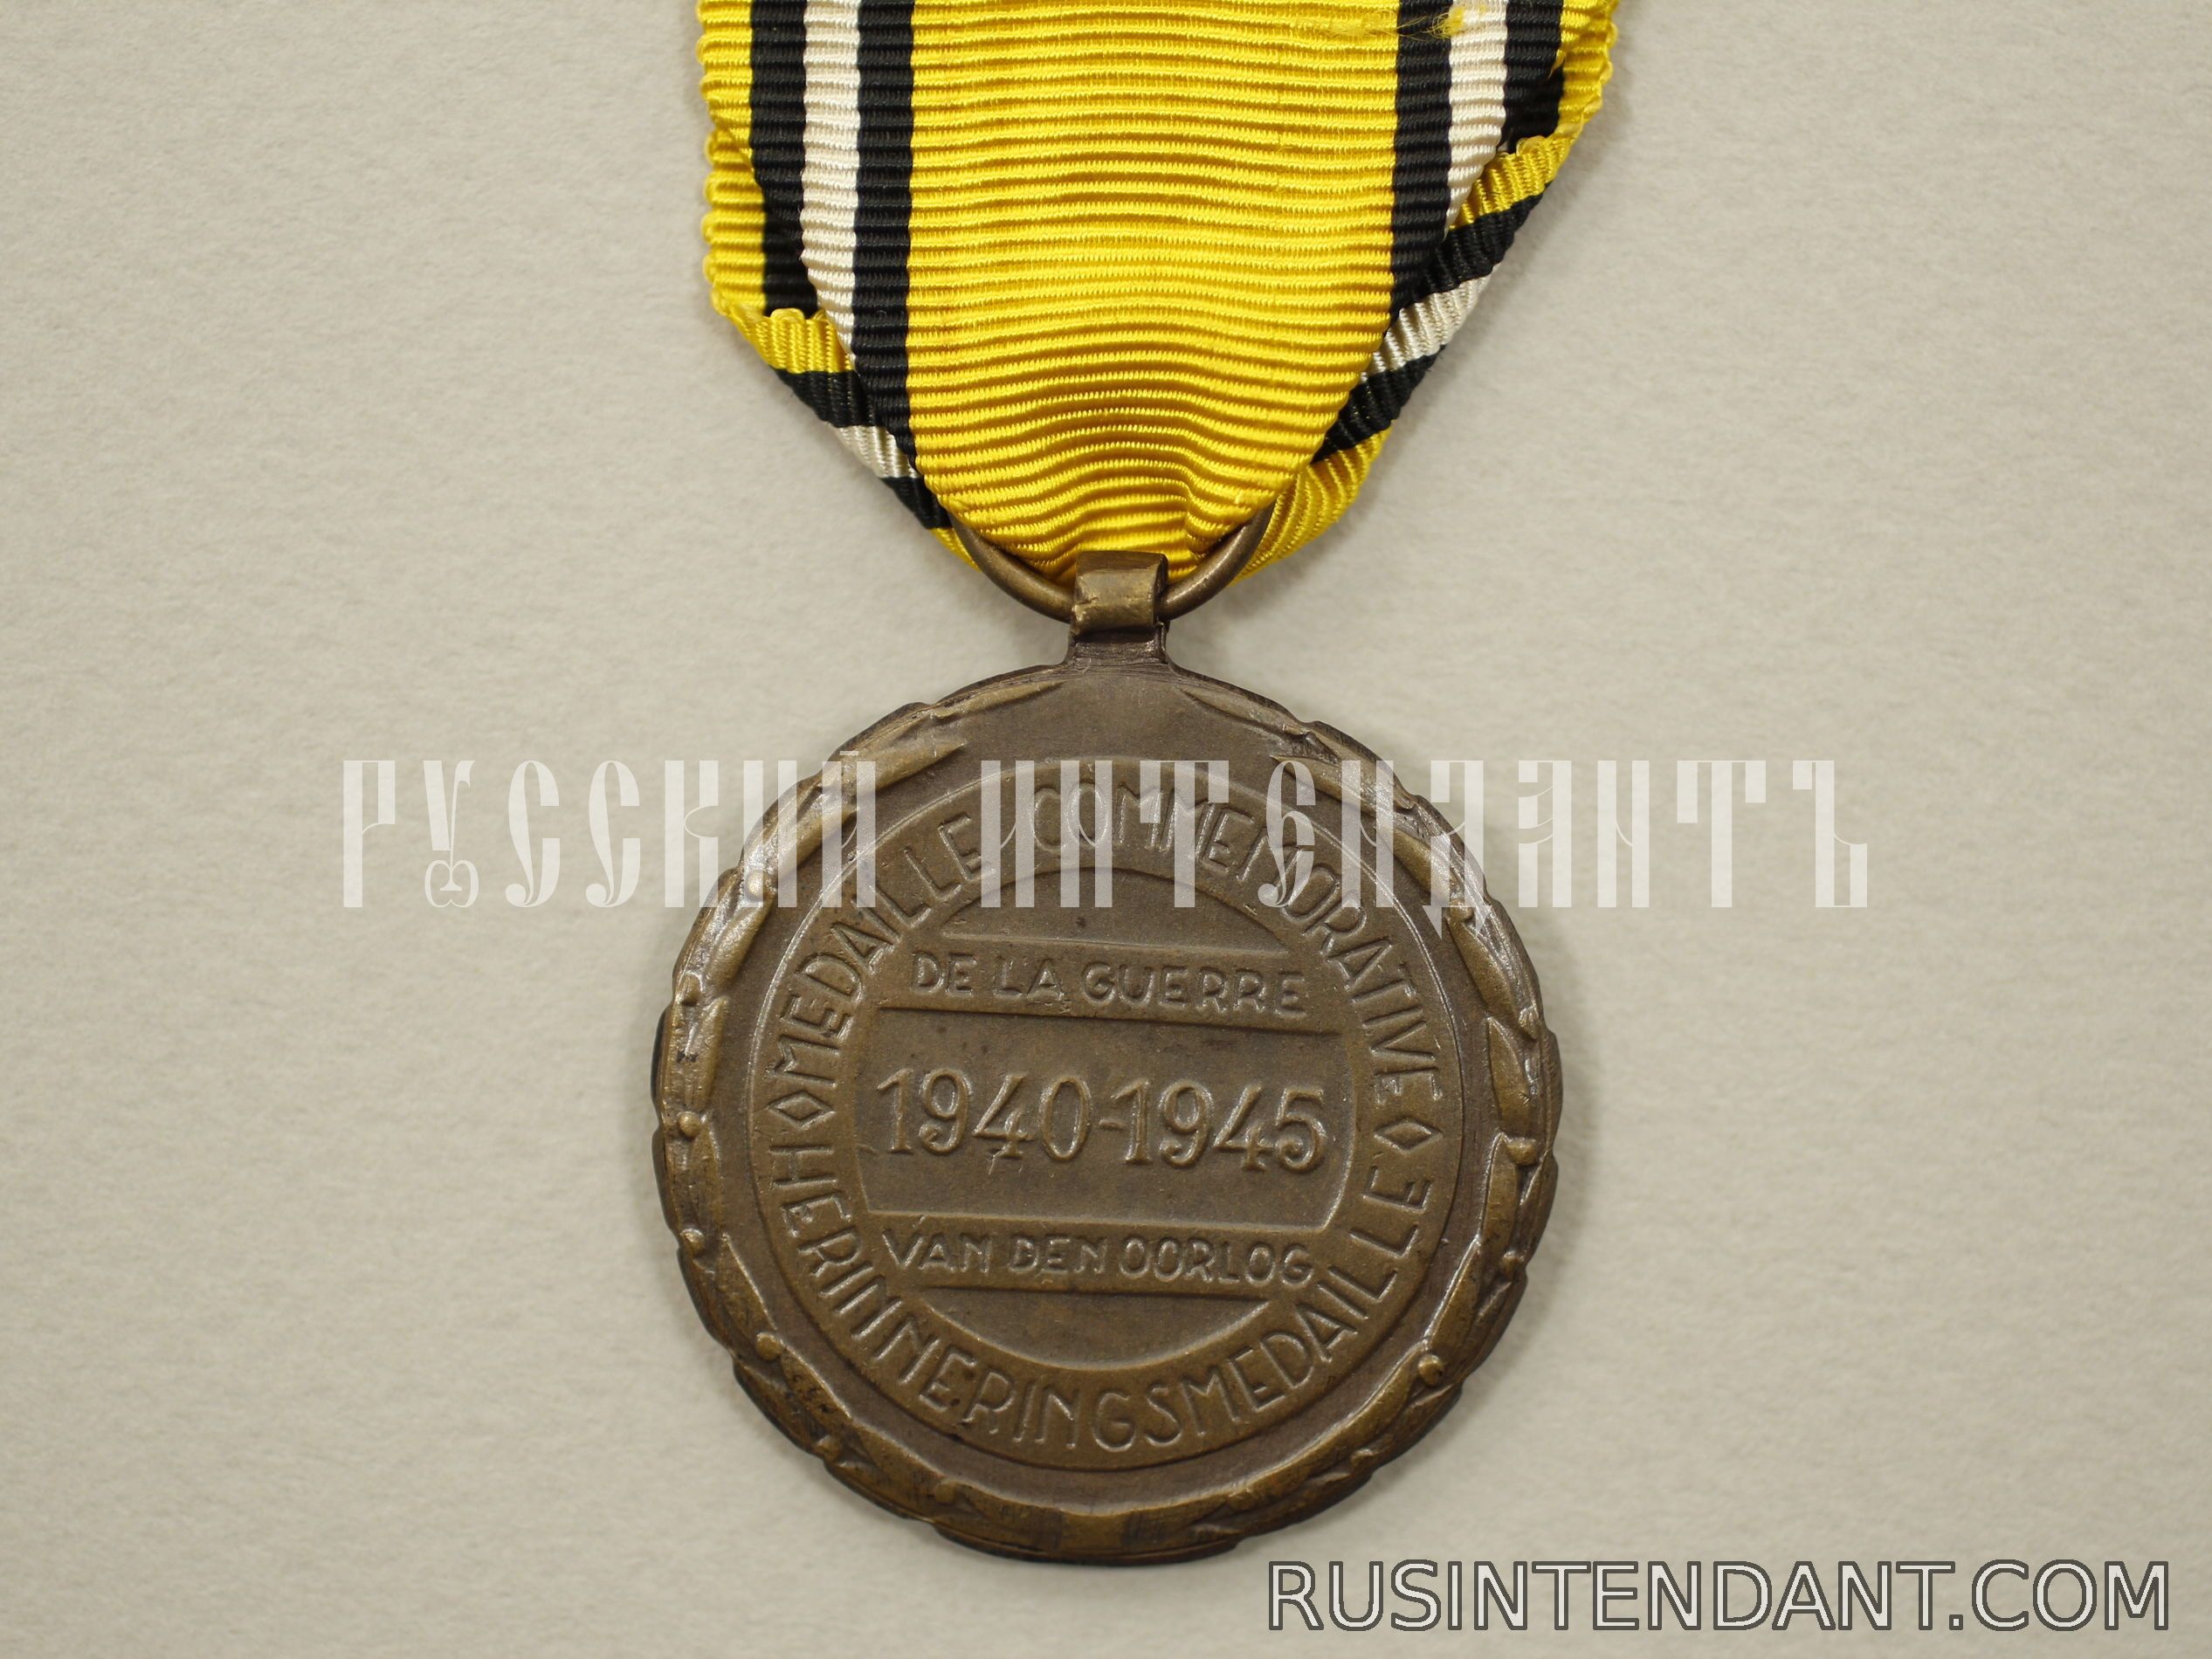 Фото 2: Бельгийская медаль "В память войны 1940-1945" 